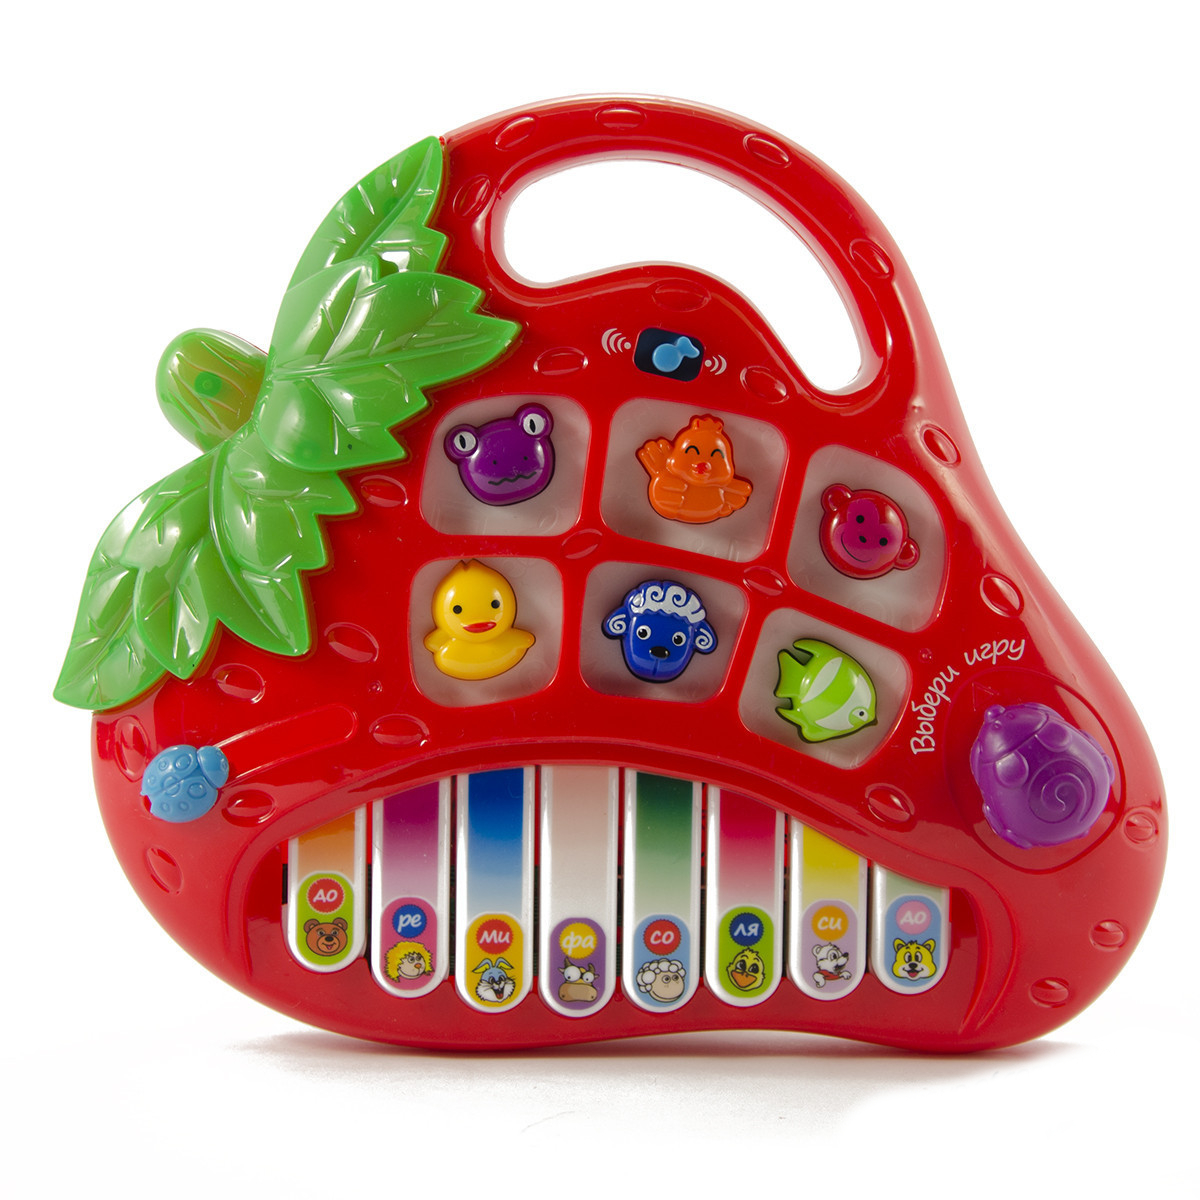 Музыкальный слух или Какими игрушками можно случайно «на ухо наступить». Отзывы наших читателей